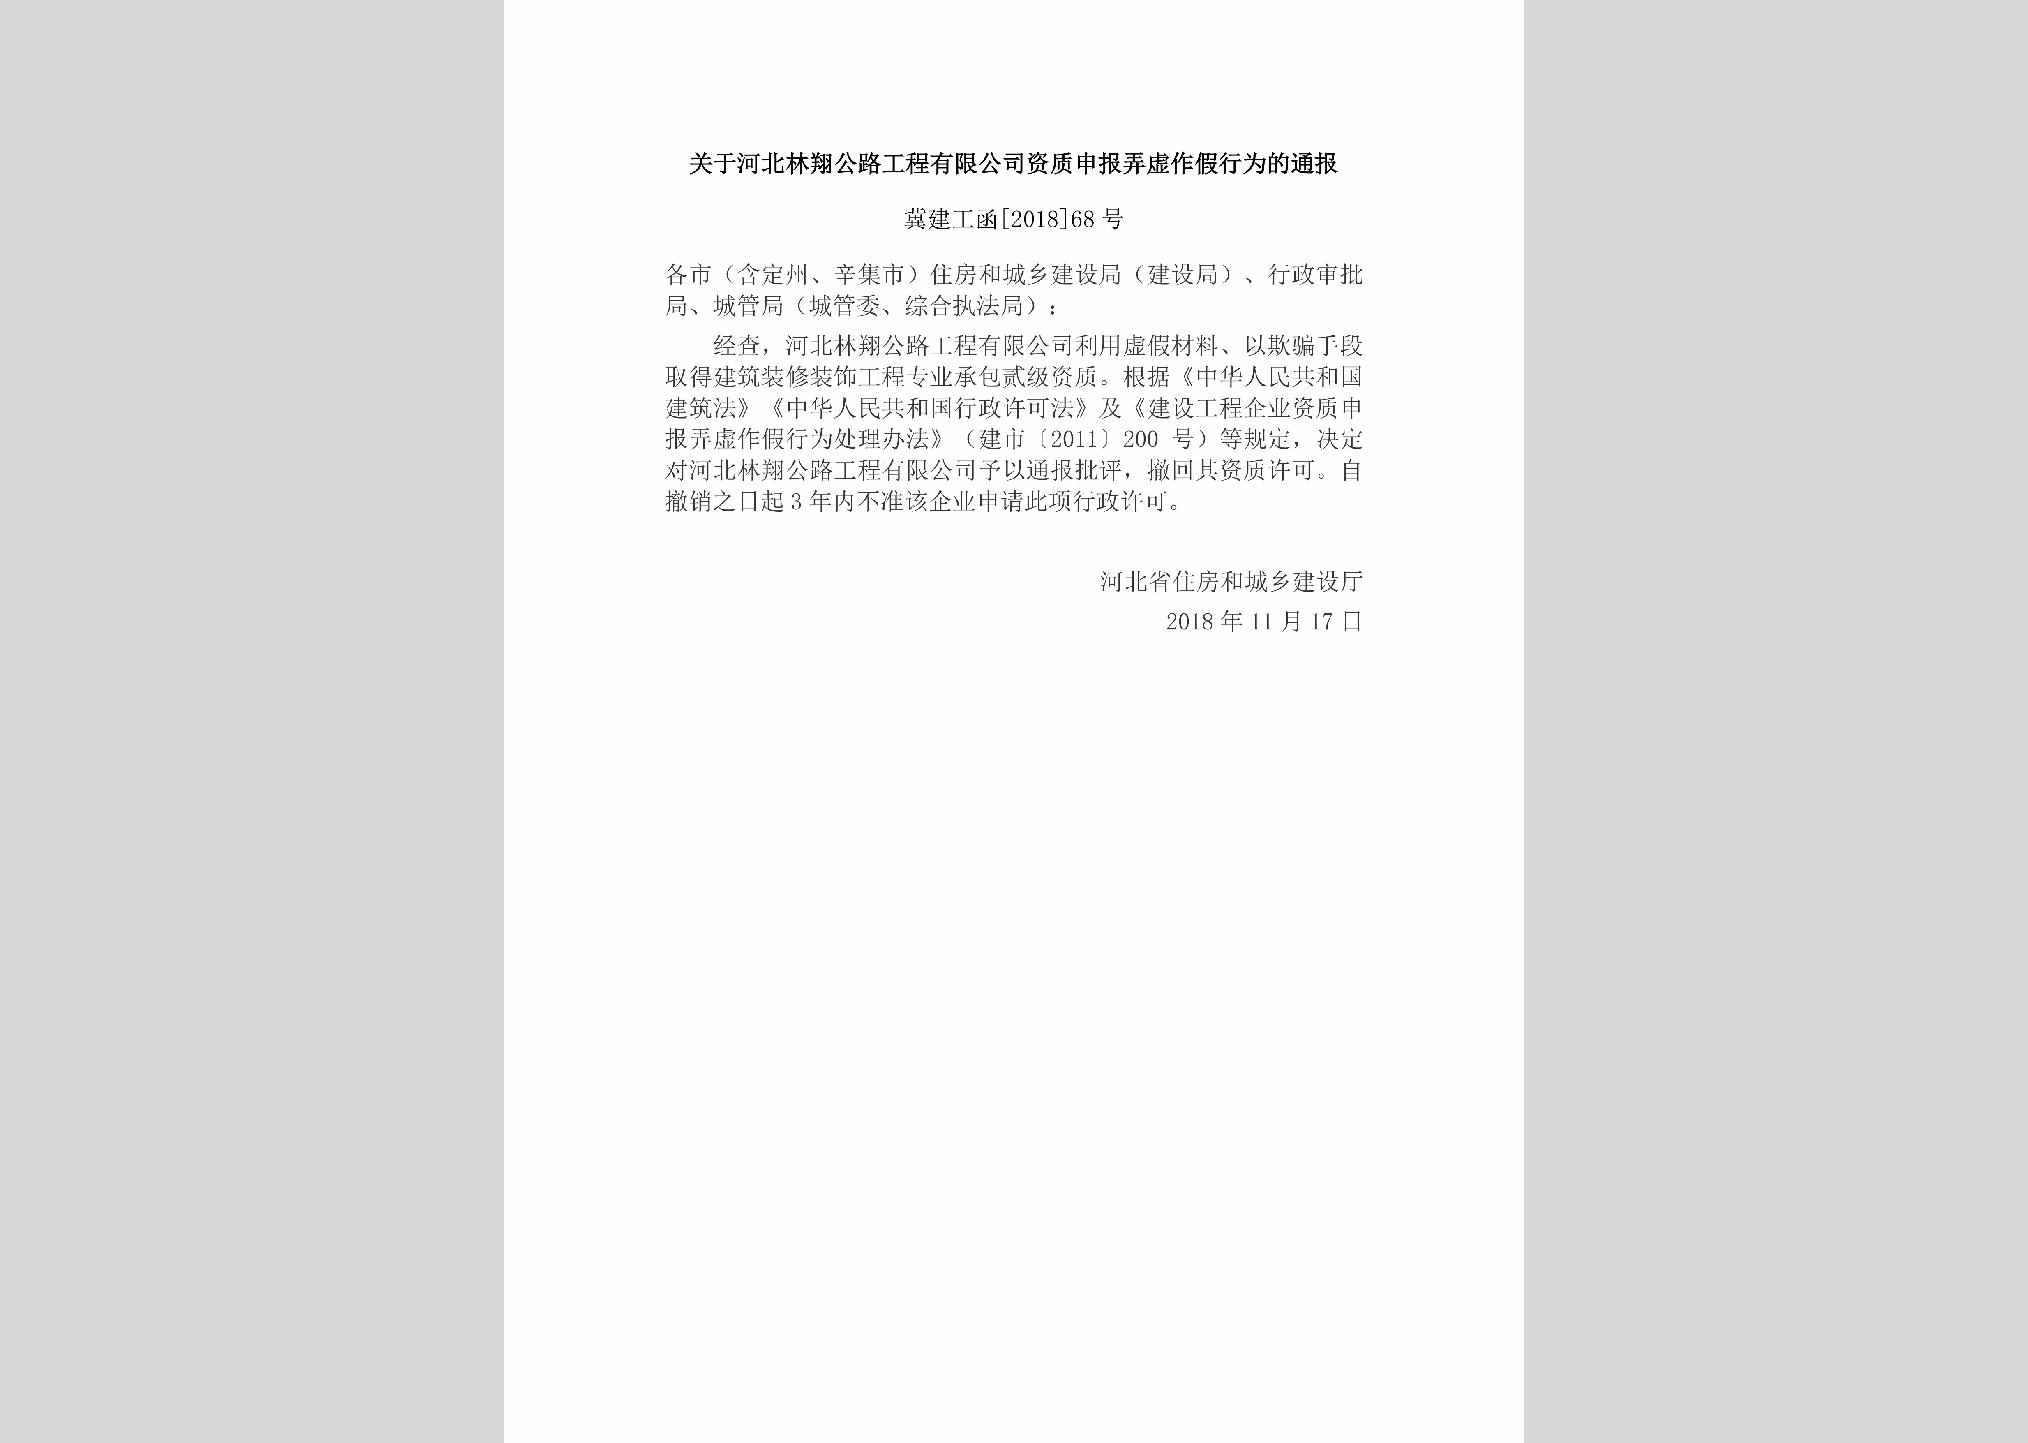 冀建工函[2018]68号：关于河北林翔公路工程有限公司资质申报弄虚作假行为的通报